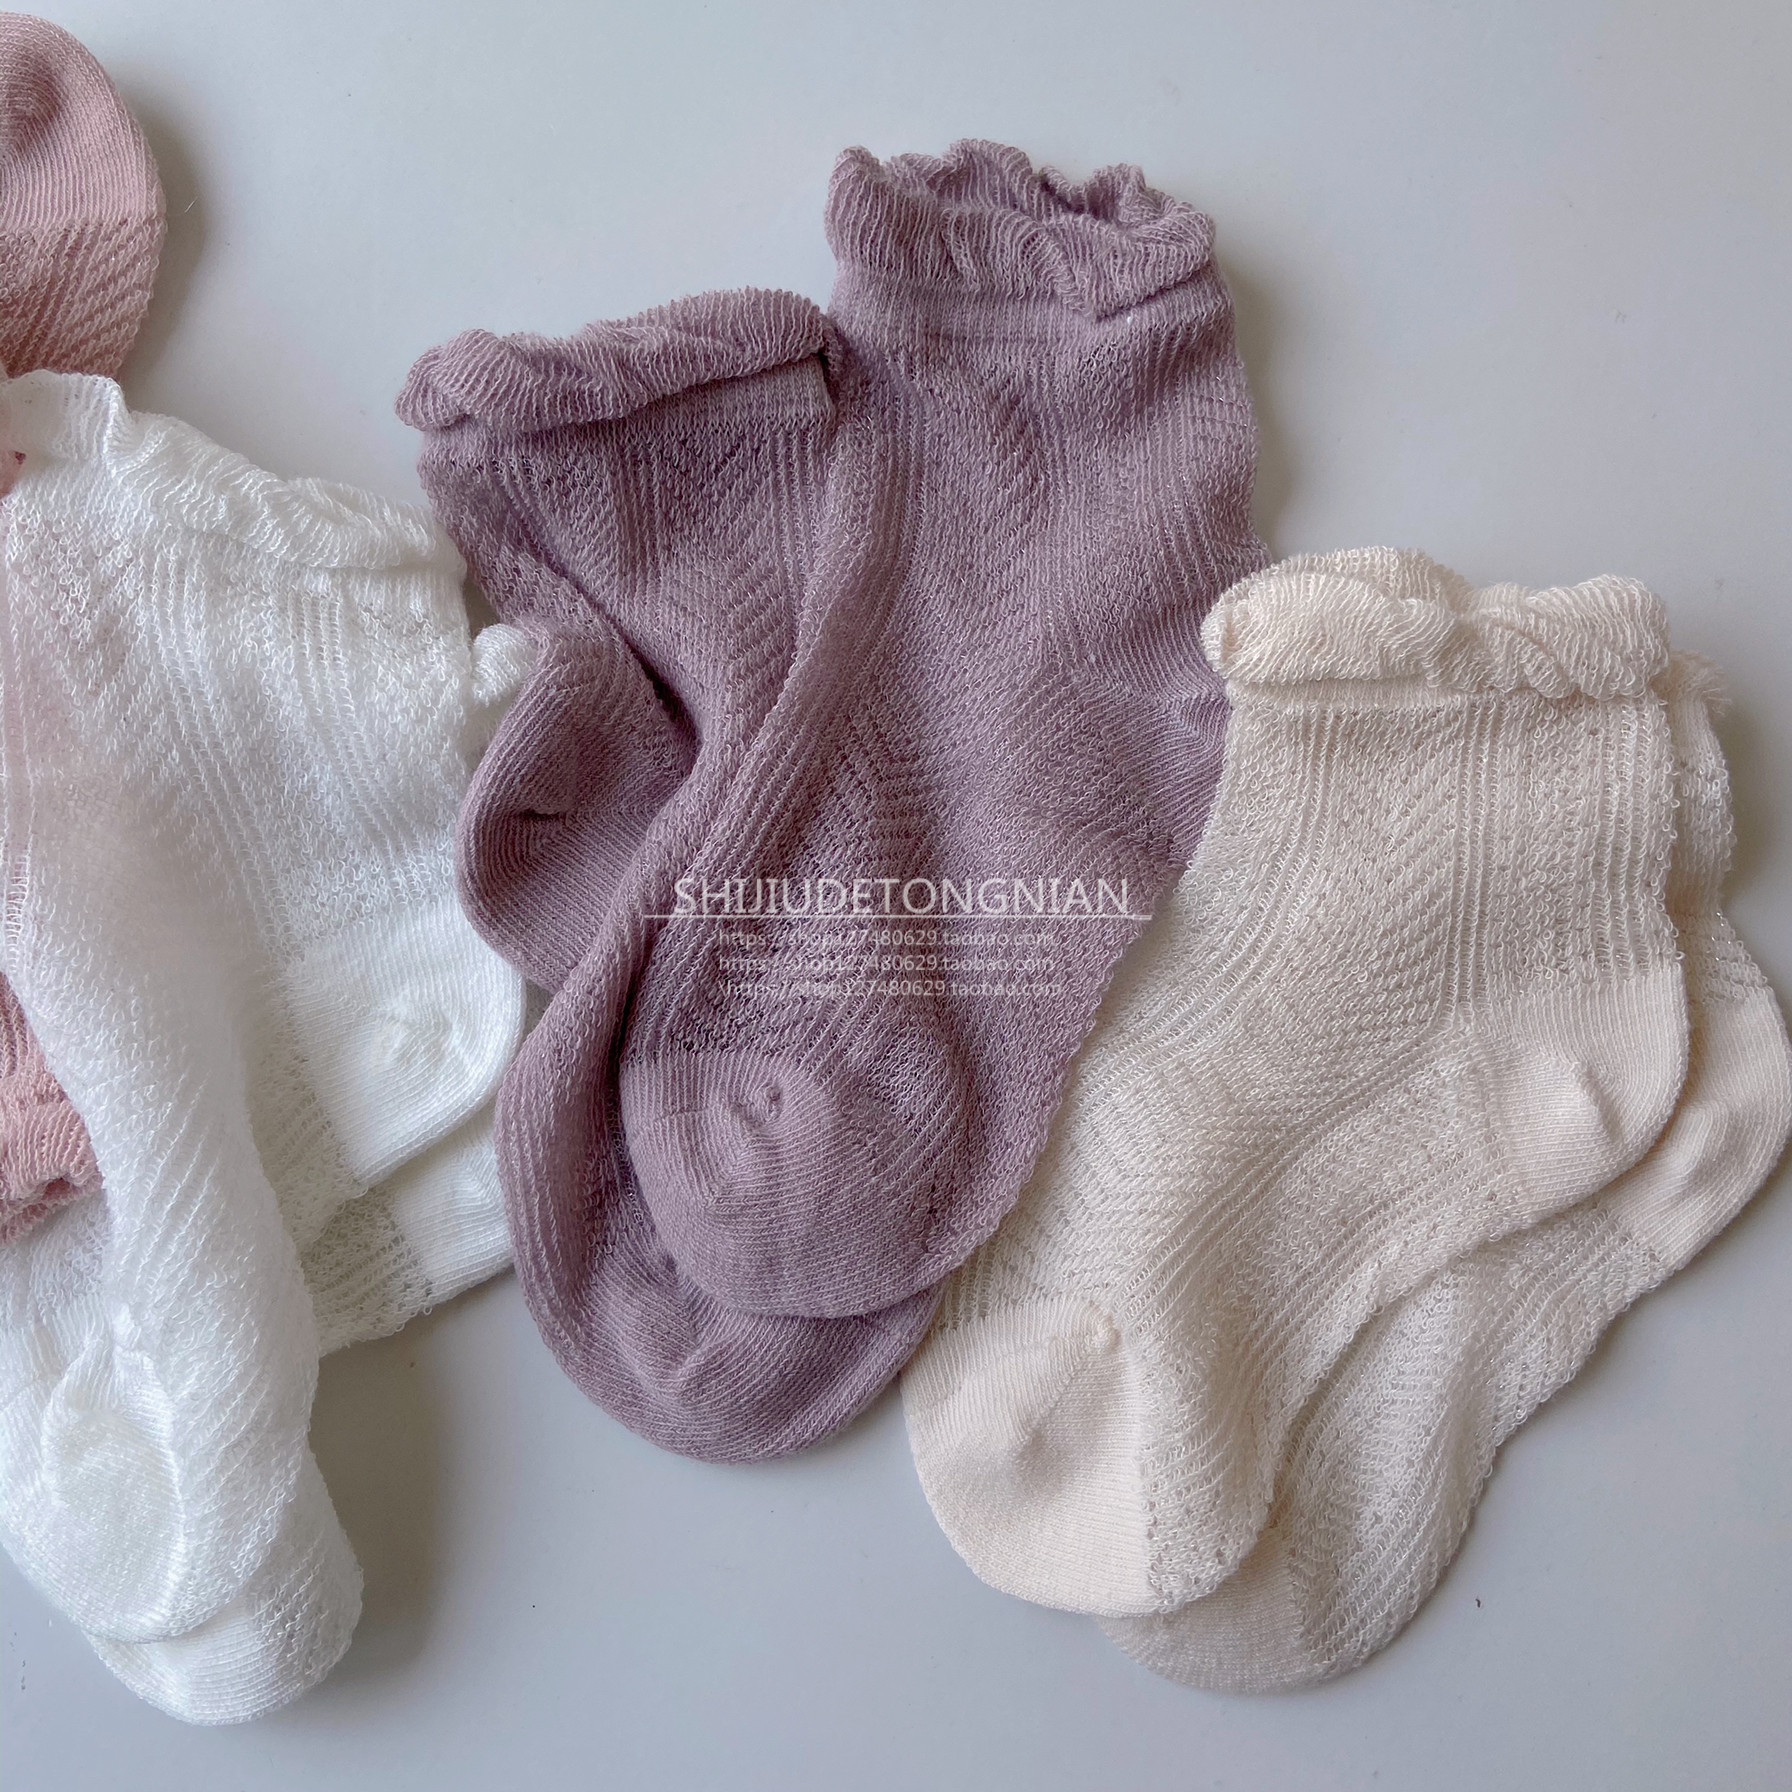 夏季女童超薄款松口袜婴儿薄款短袜宝宝可爱花边网眼纯棉短袜